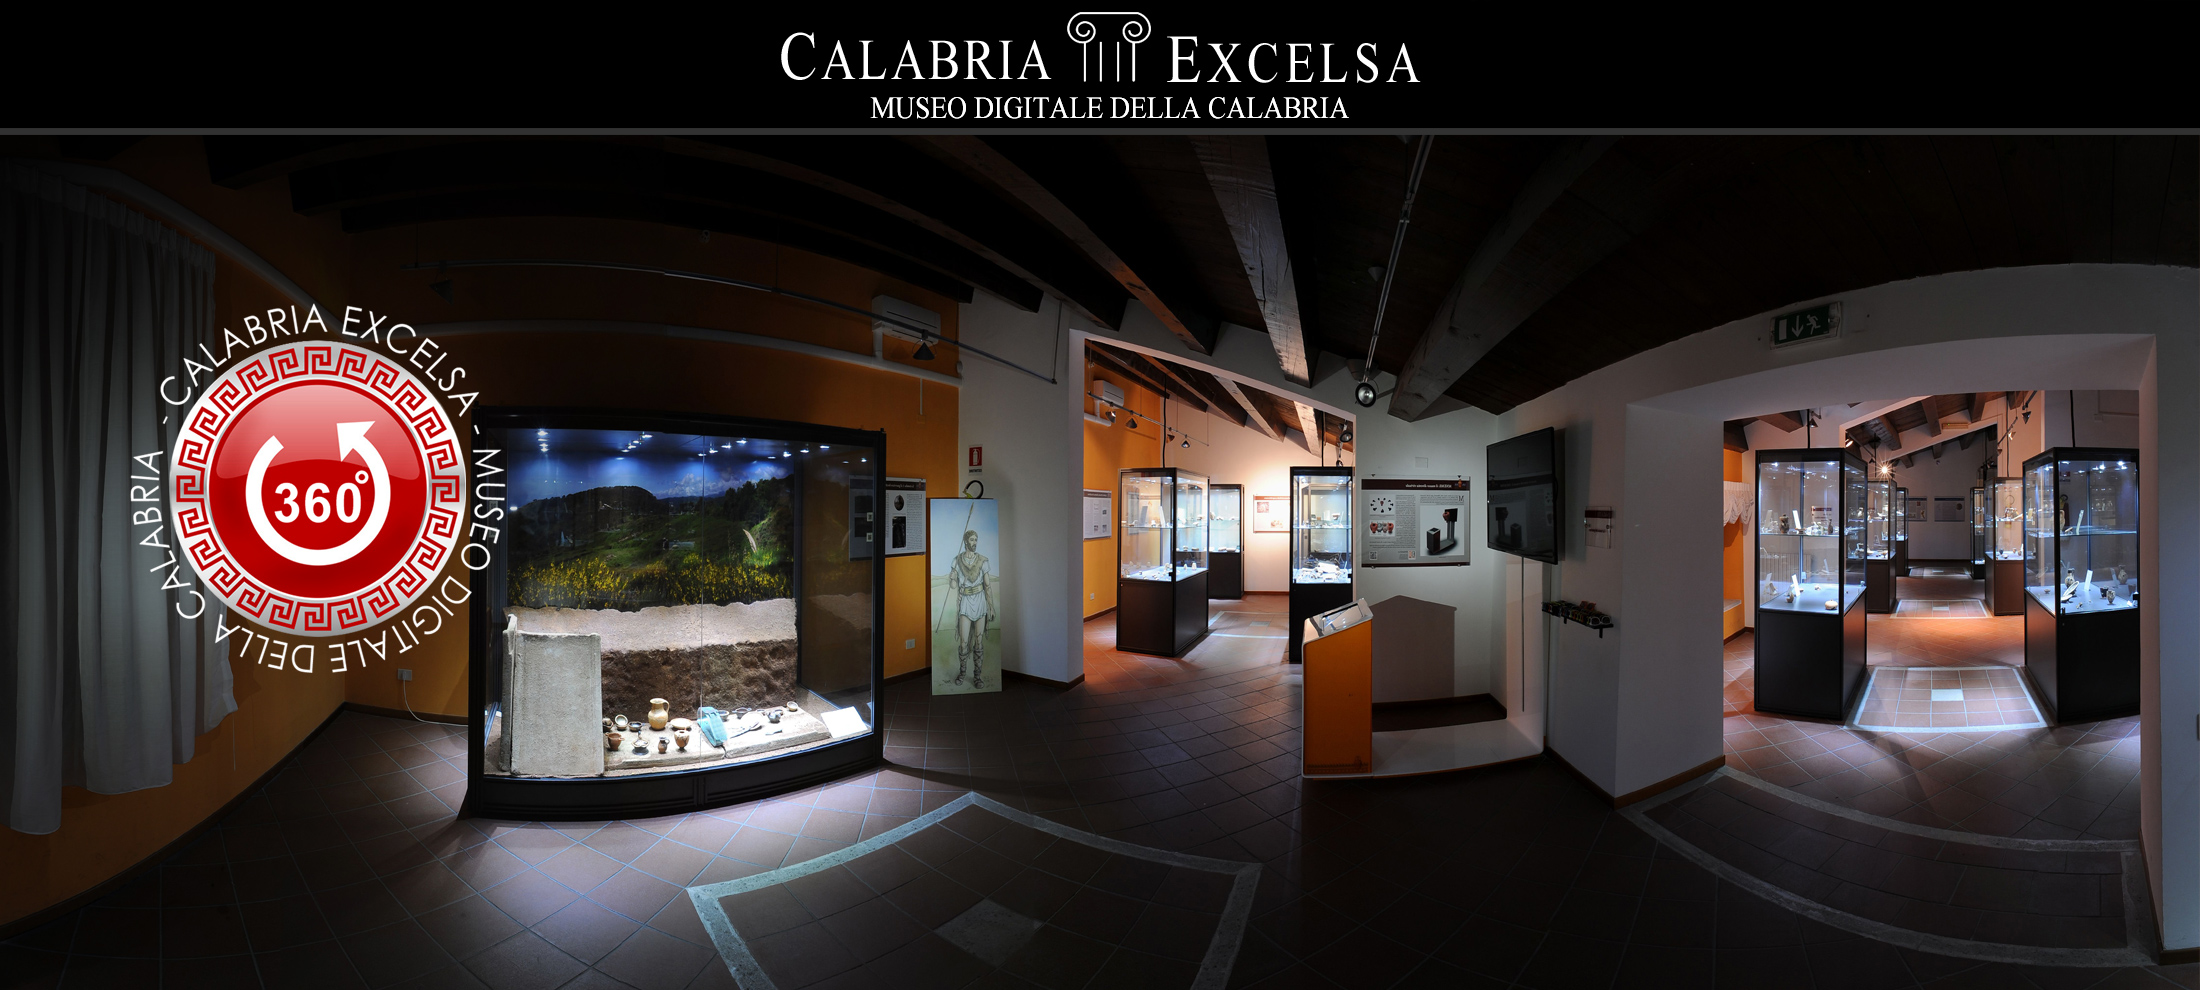 Museo Digitale della Calabria CALABRIAEXCELSA - Cetraro Museo Civico sezione Archeologica I Brettii